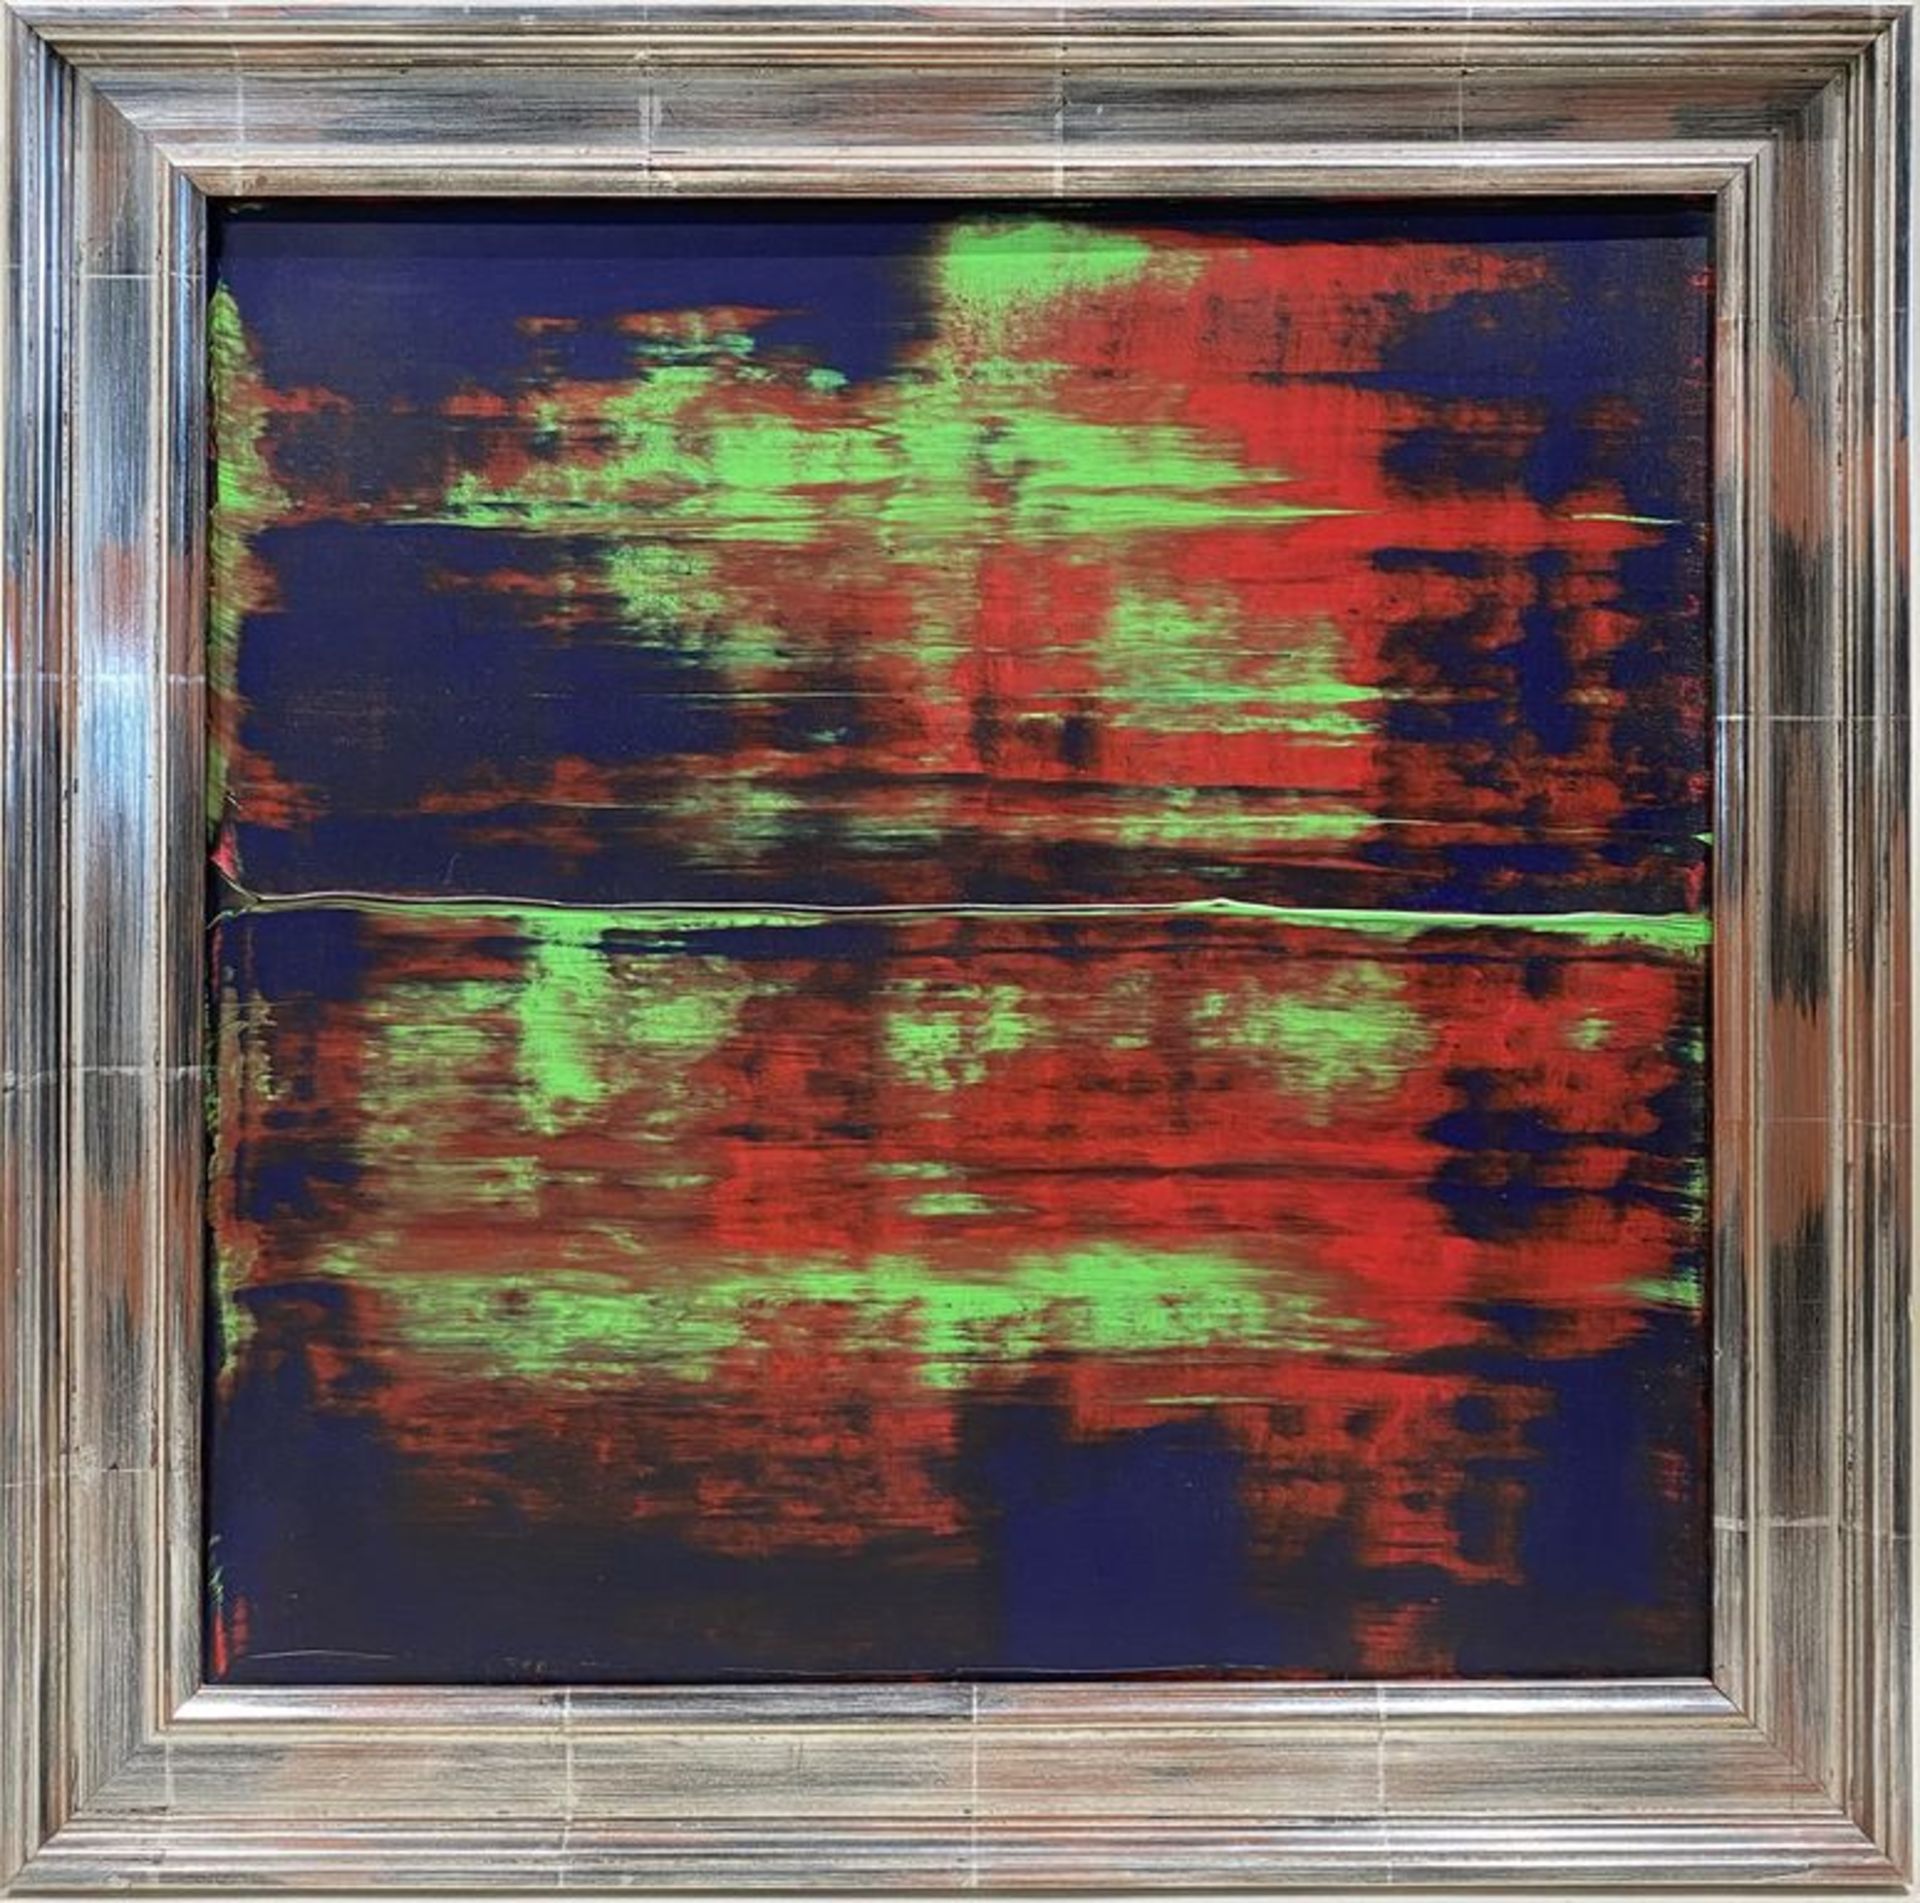 Unbekannter Maler (um 1995) Abstrakte Komposition in Blau, Rot und Grün. Acryl/Lwd., verso